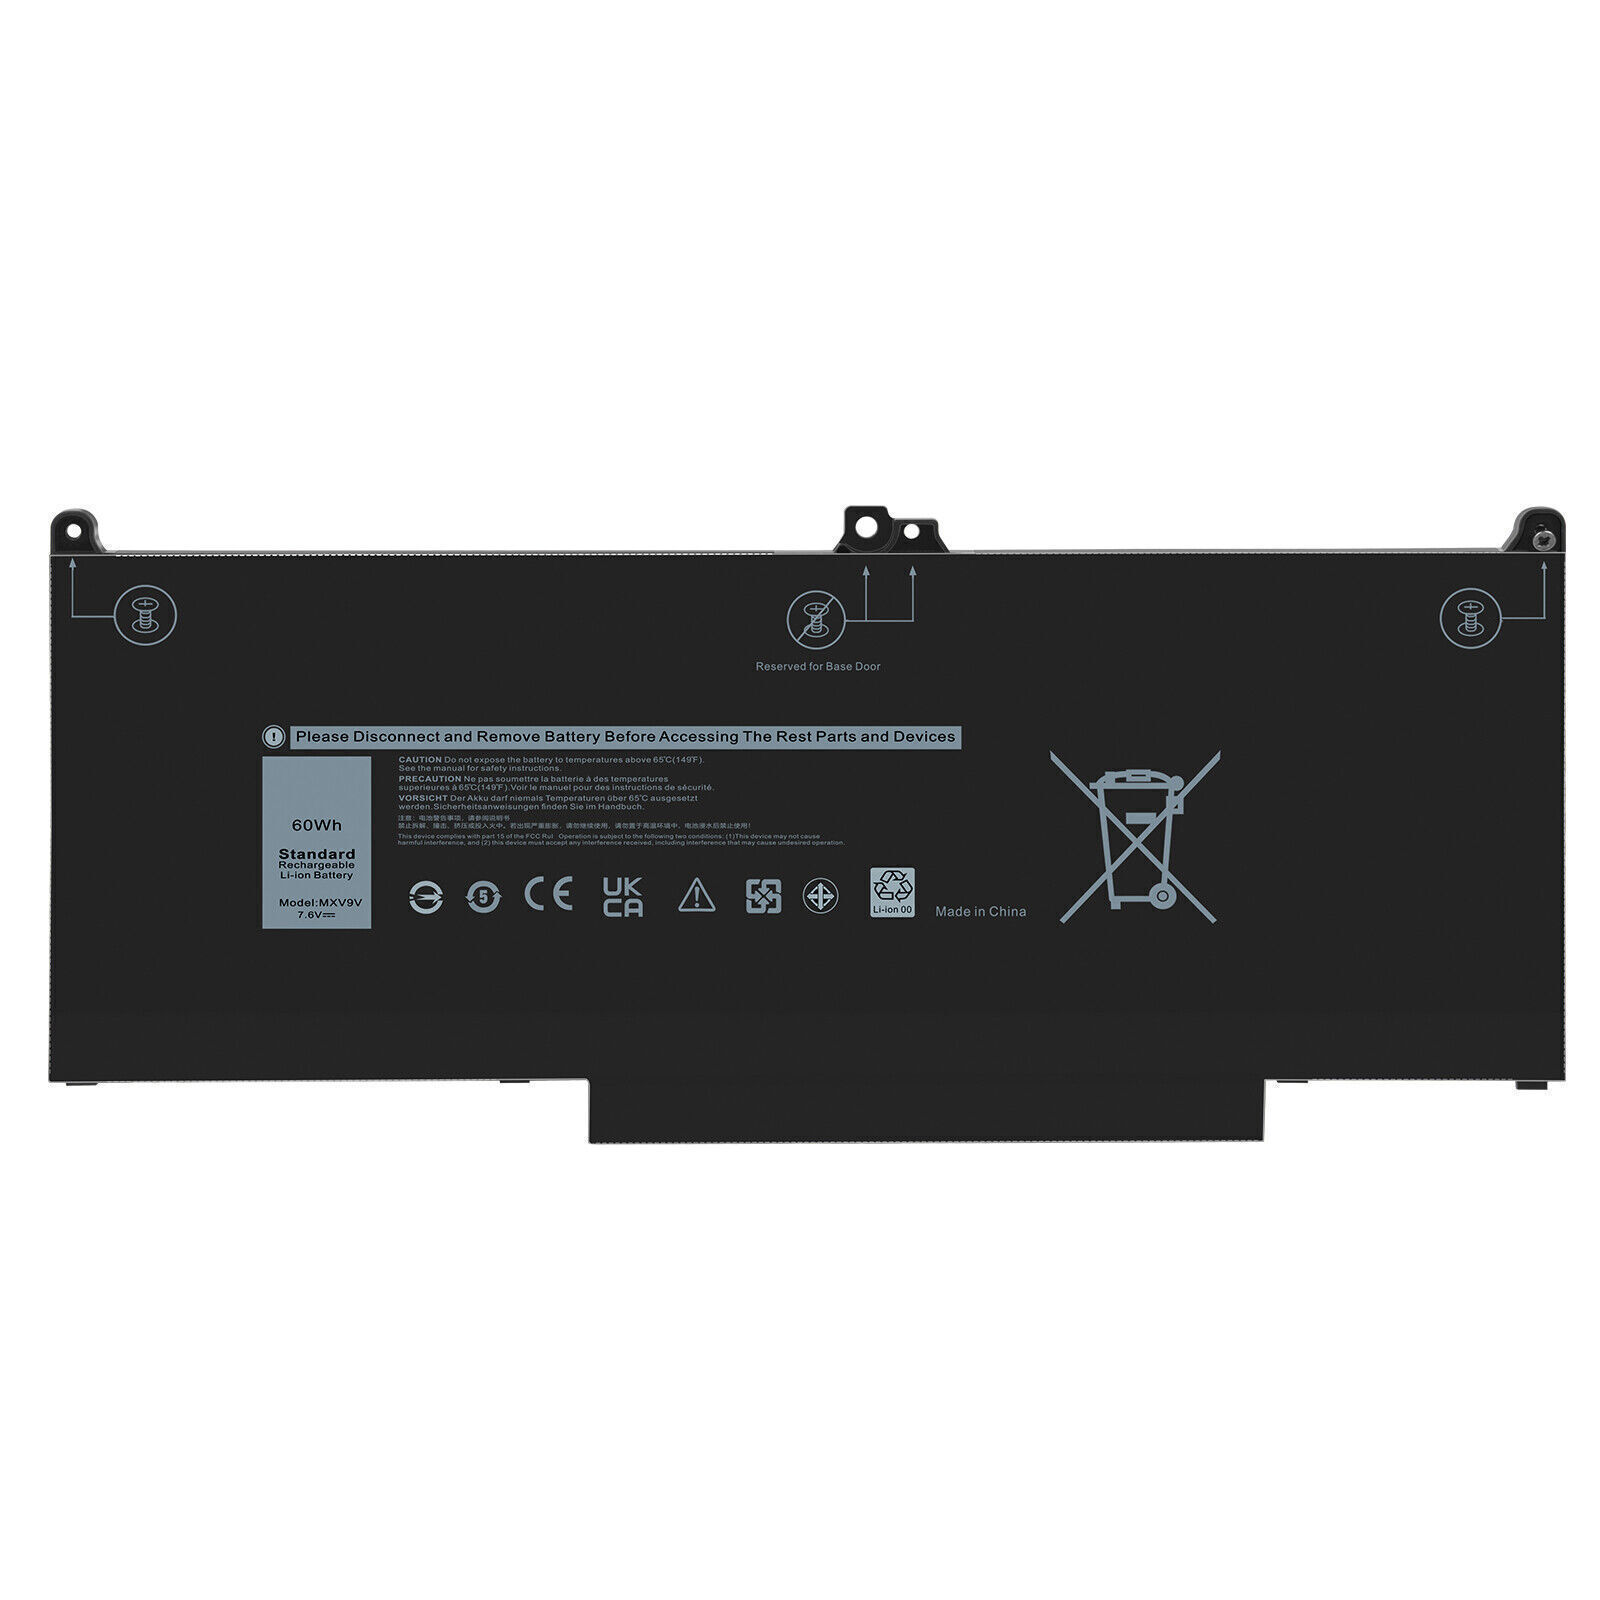 MXV9V Battery For Dell Latitude 5300 5310 7300 7400 E5300 E7300 E7400 7.6V 60Wh